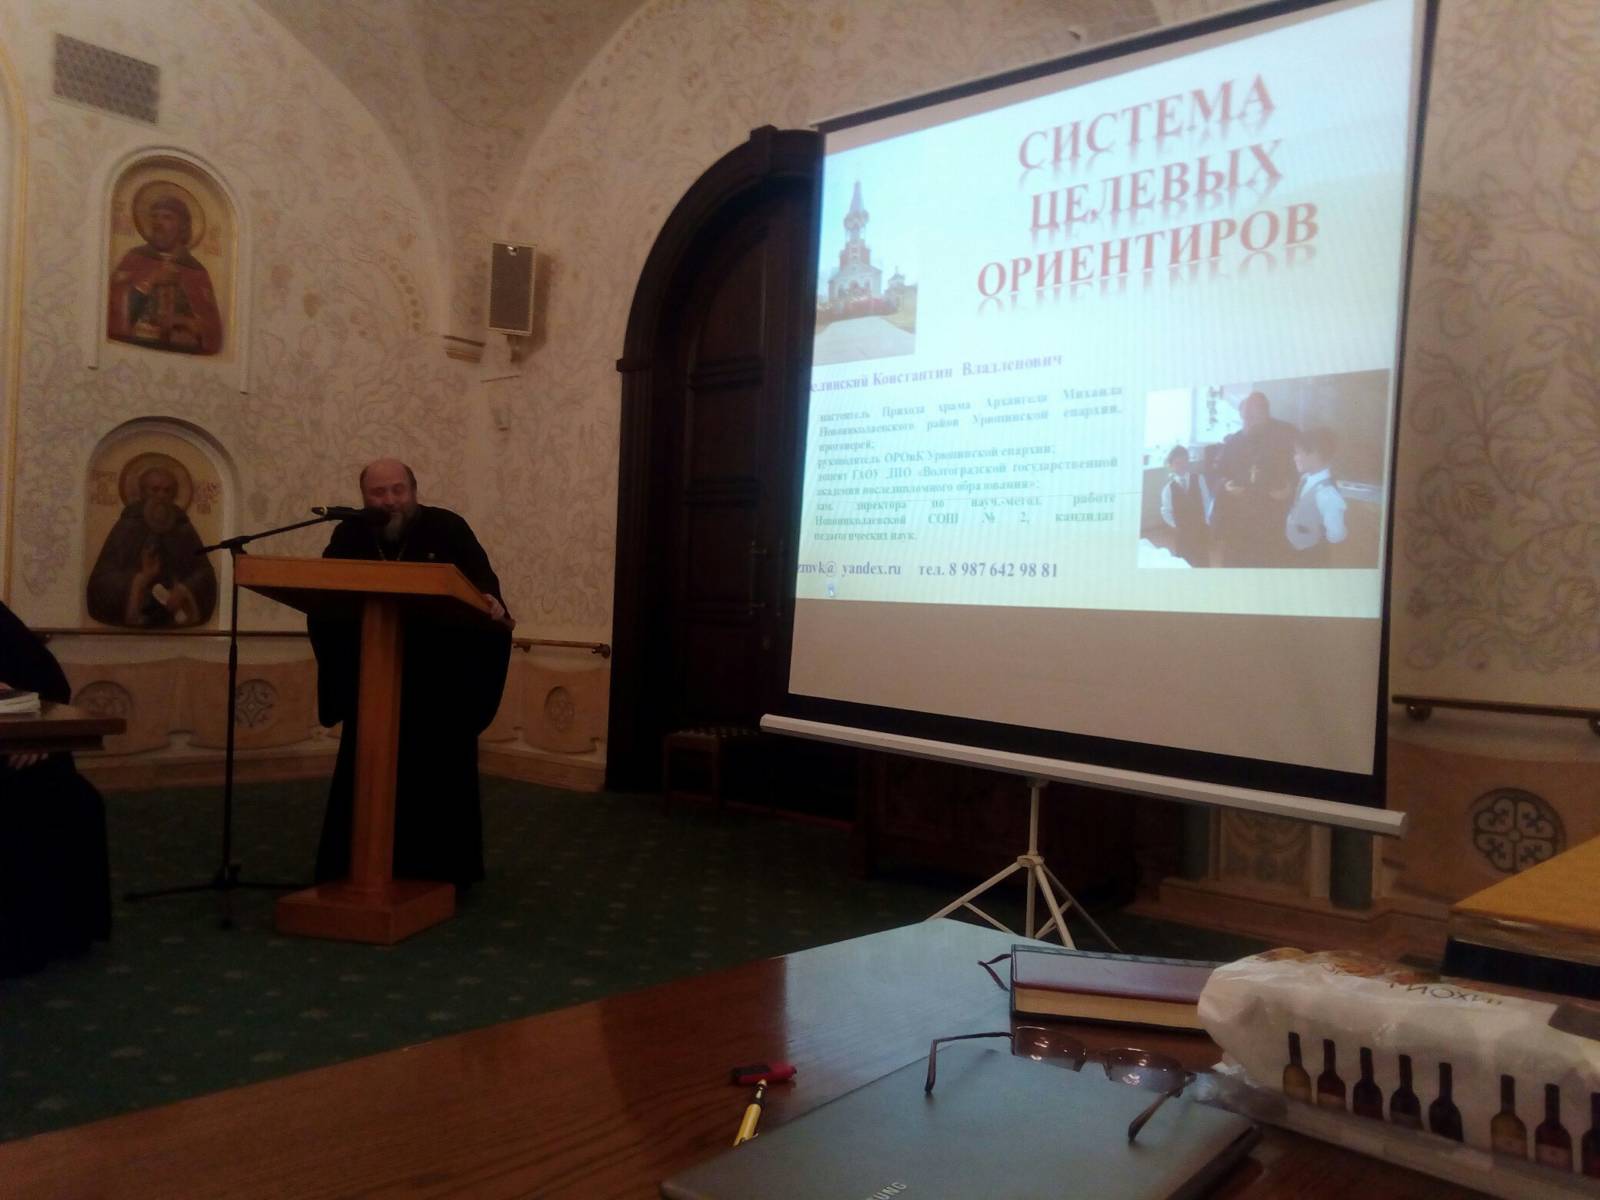 Протоиерей Константин Зелинский выступил с докладом в храме Христа Спасителя (Белый зал).